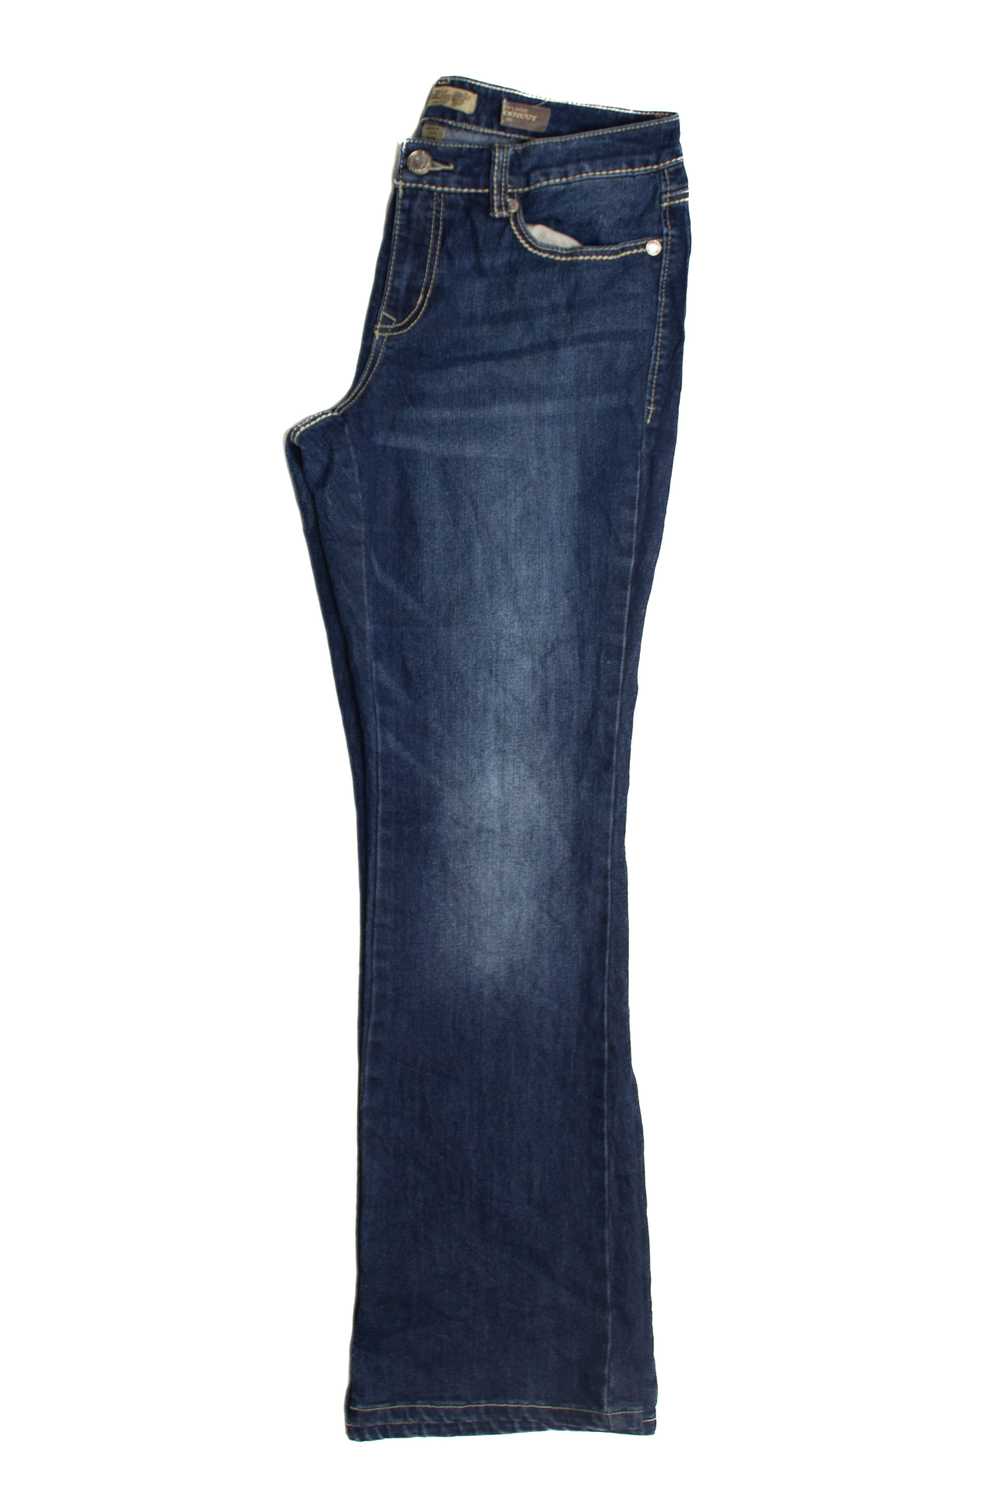 Y2k Mandala Embellished Denim Jeans (2000s) 985 - image 2